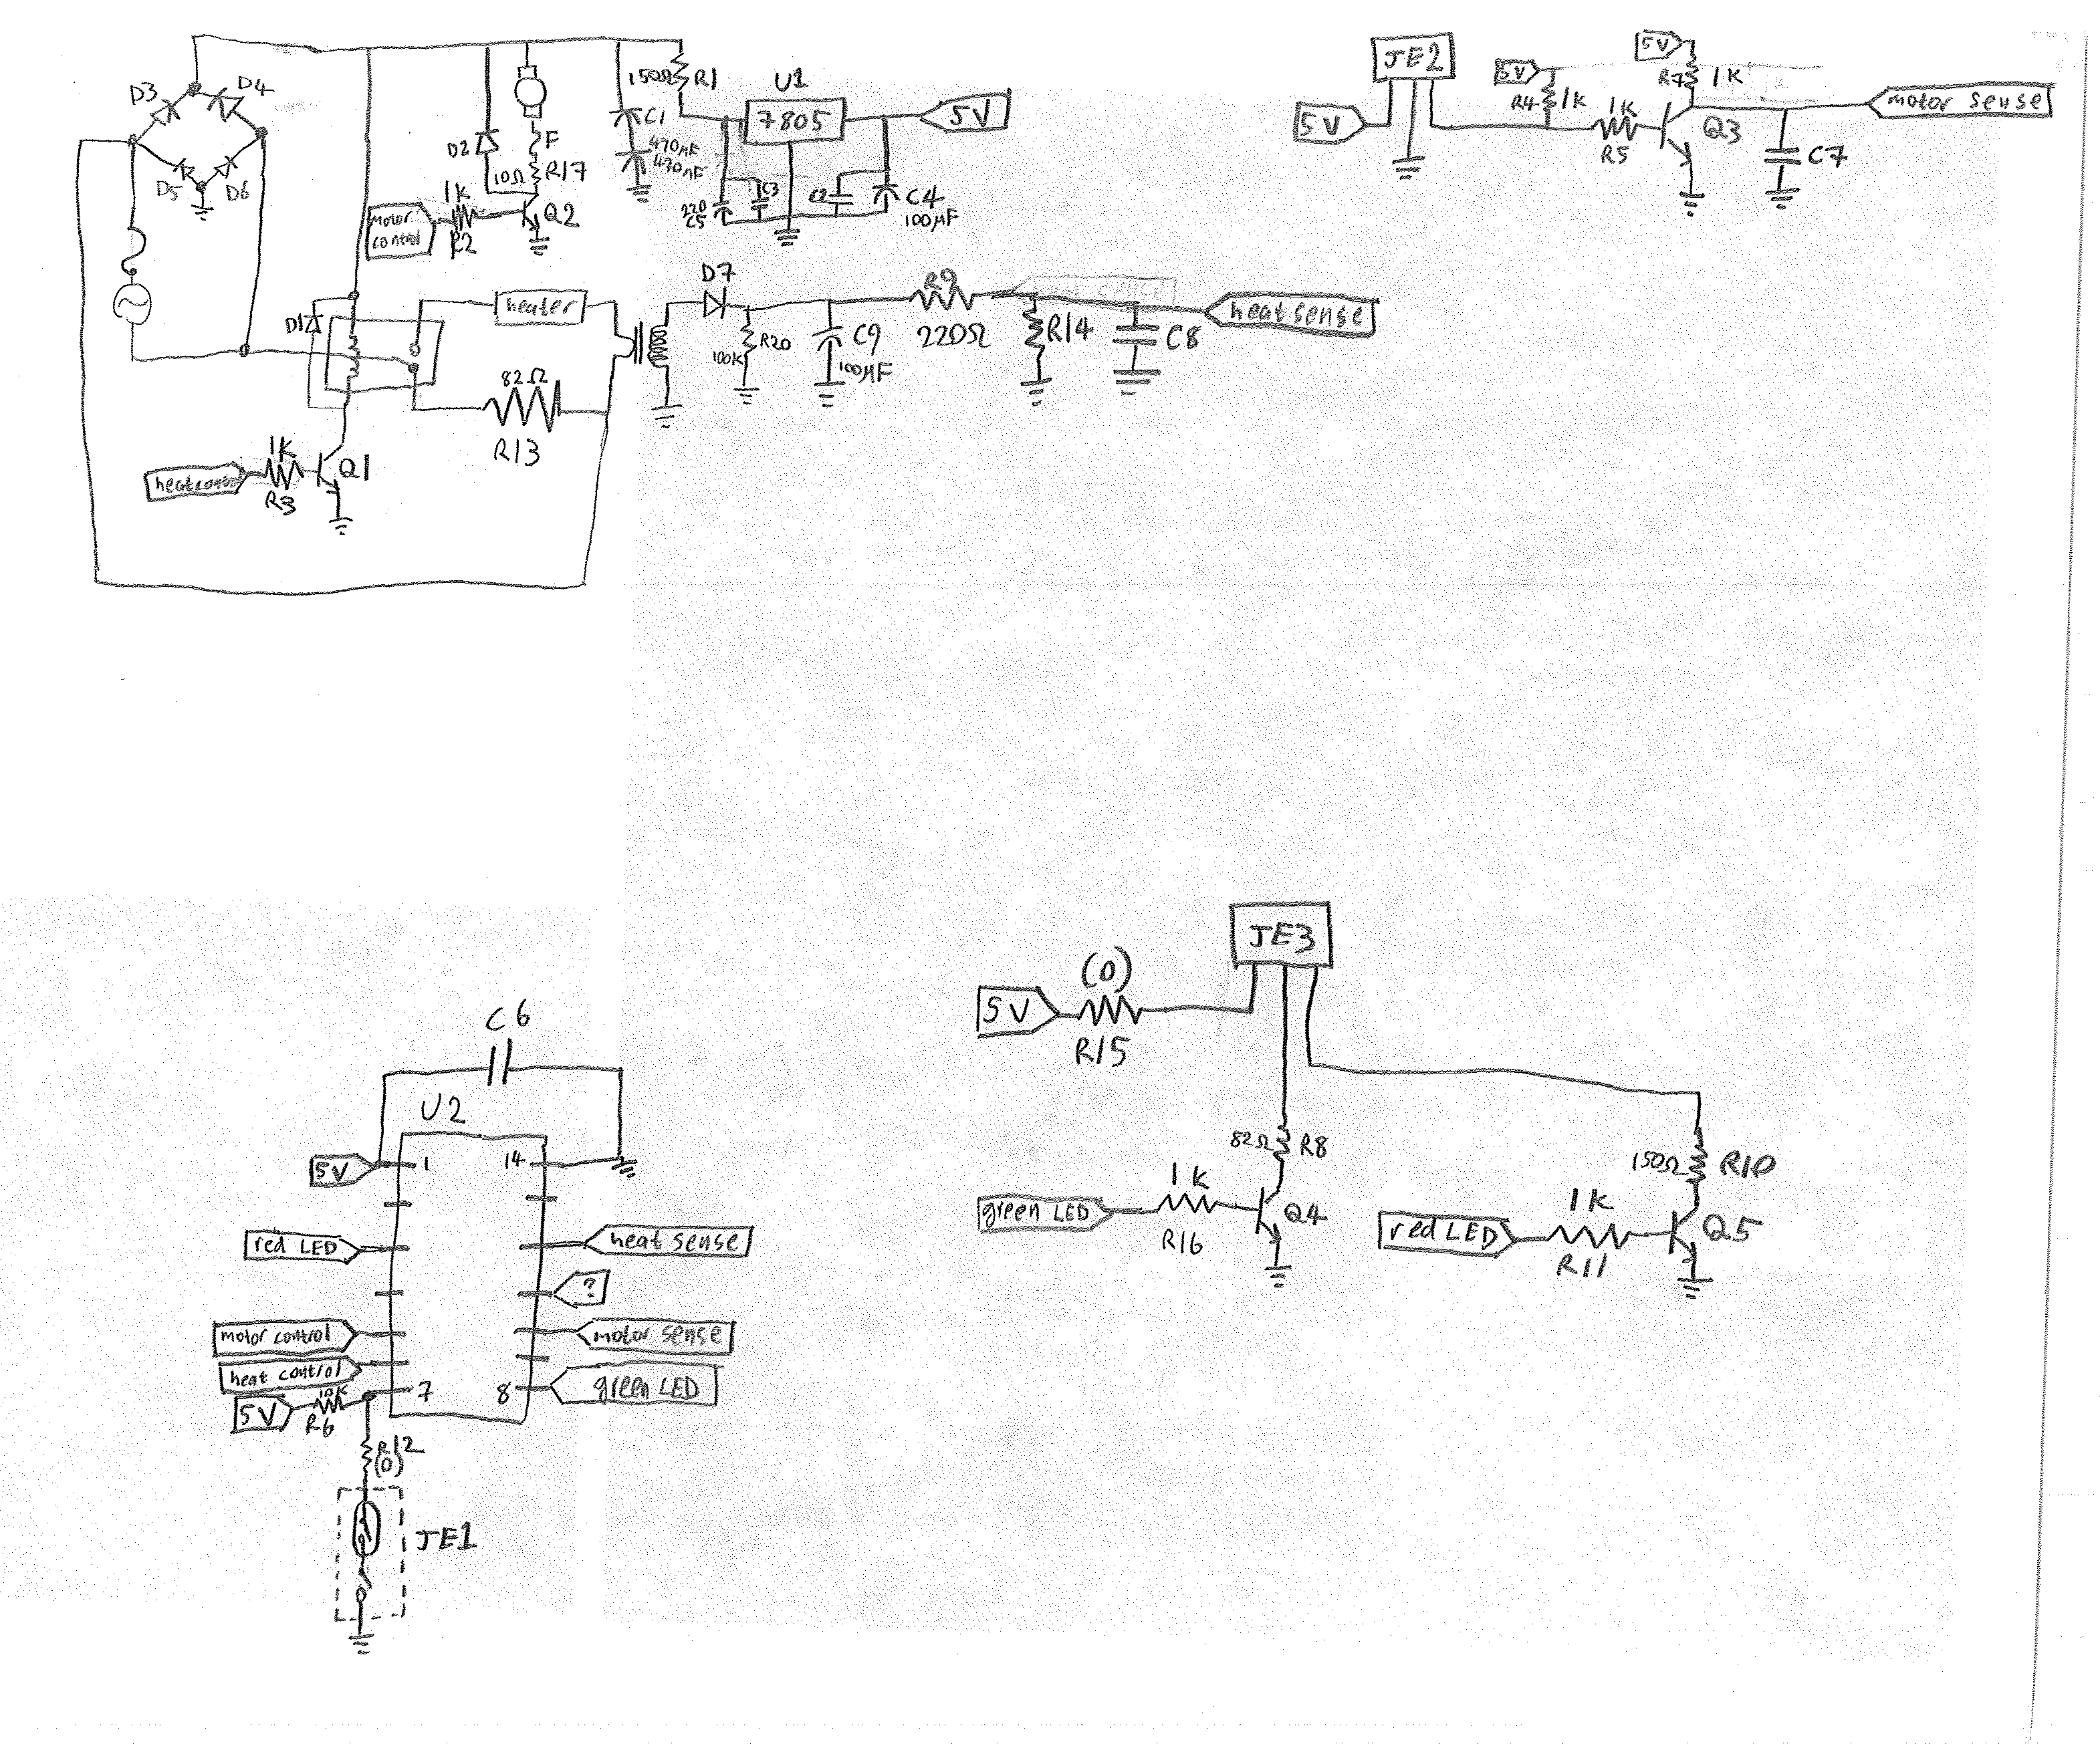 a hand-drawn circuit diagram